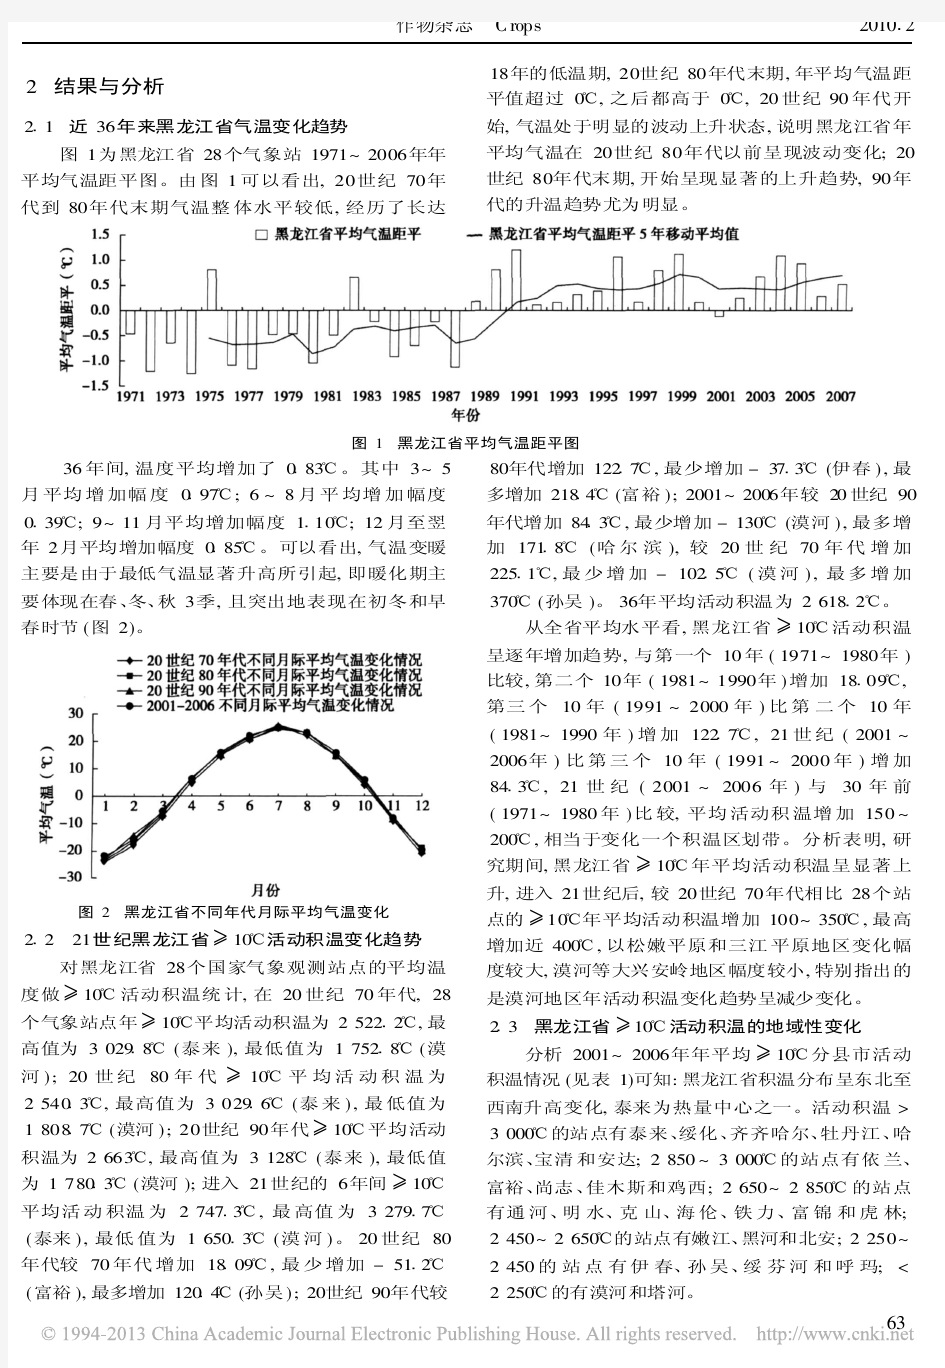 黑龙江省年有效积温变化趋势和大豆温度生态适宜性种植区划_杨显峰